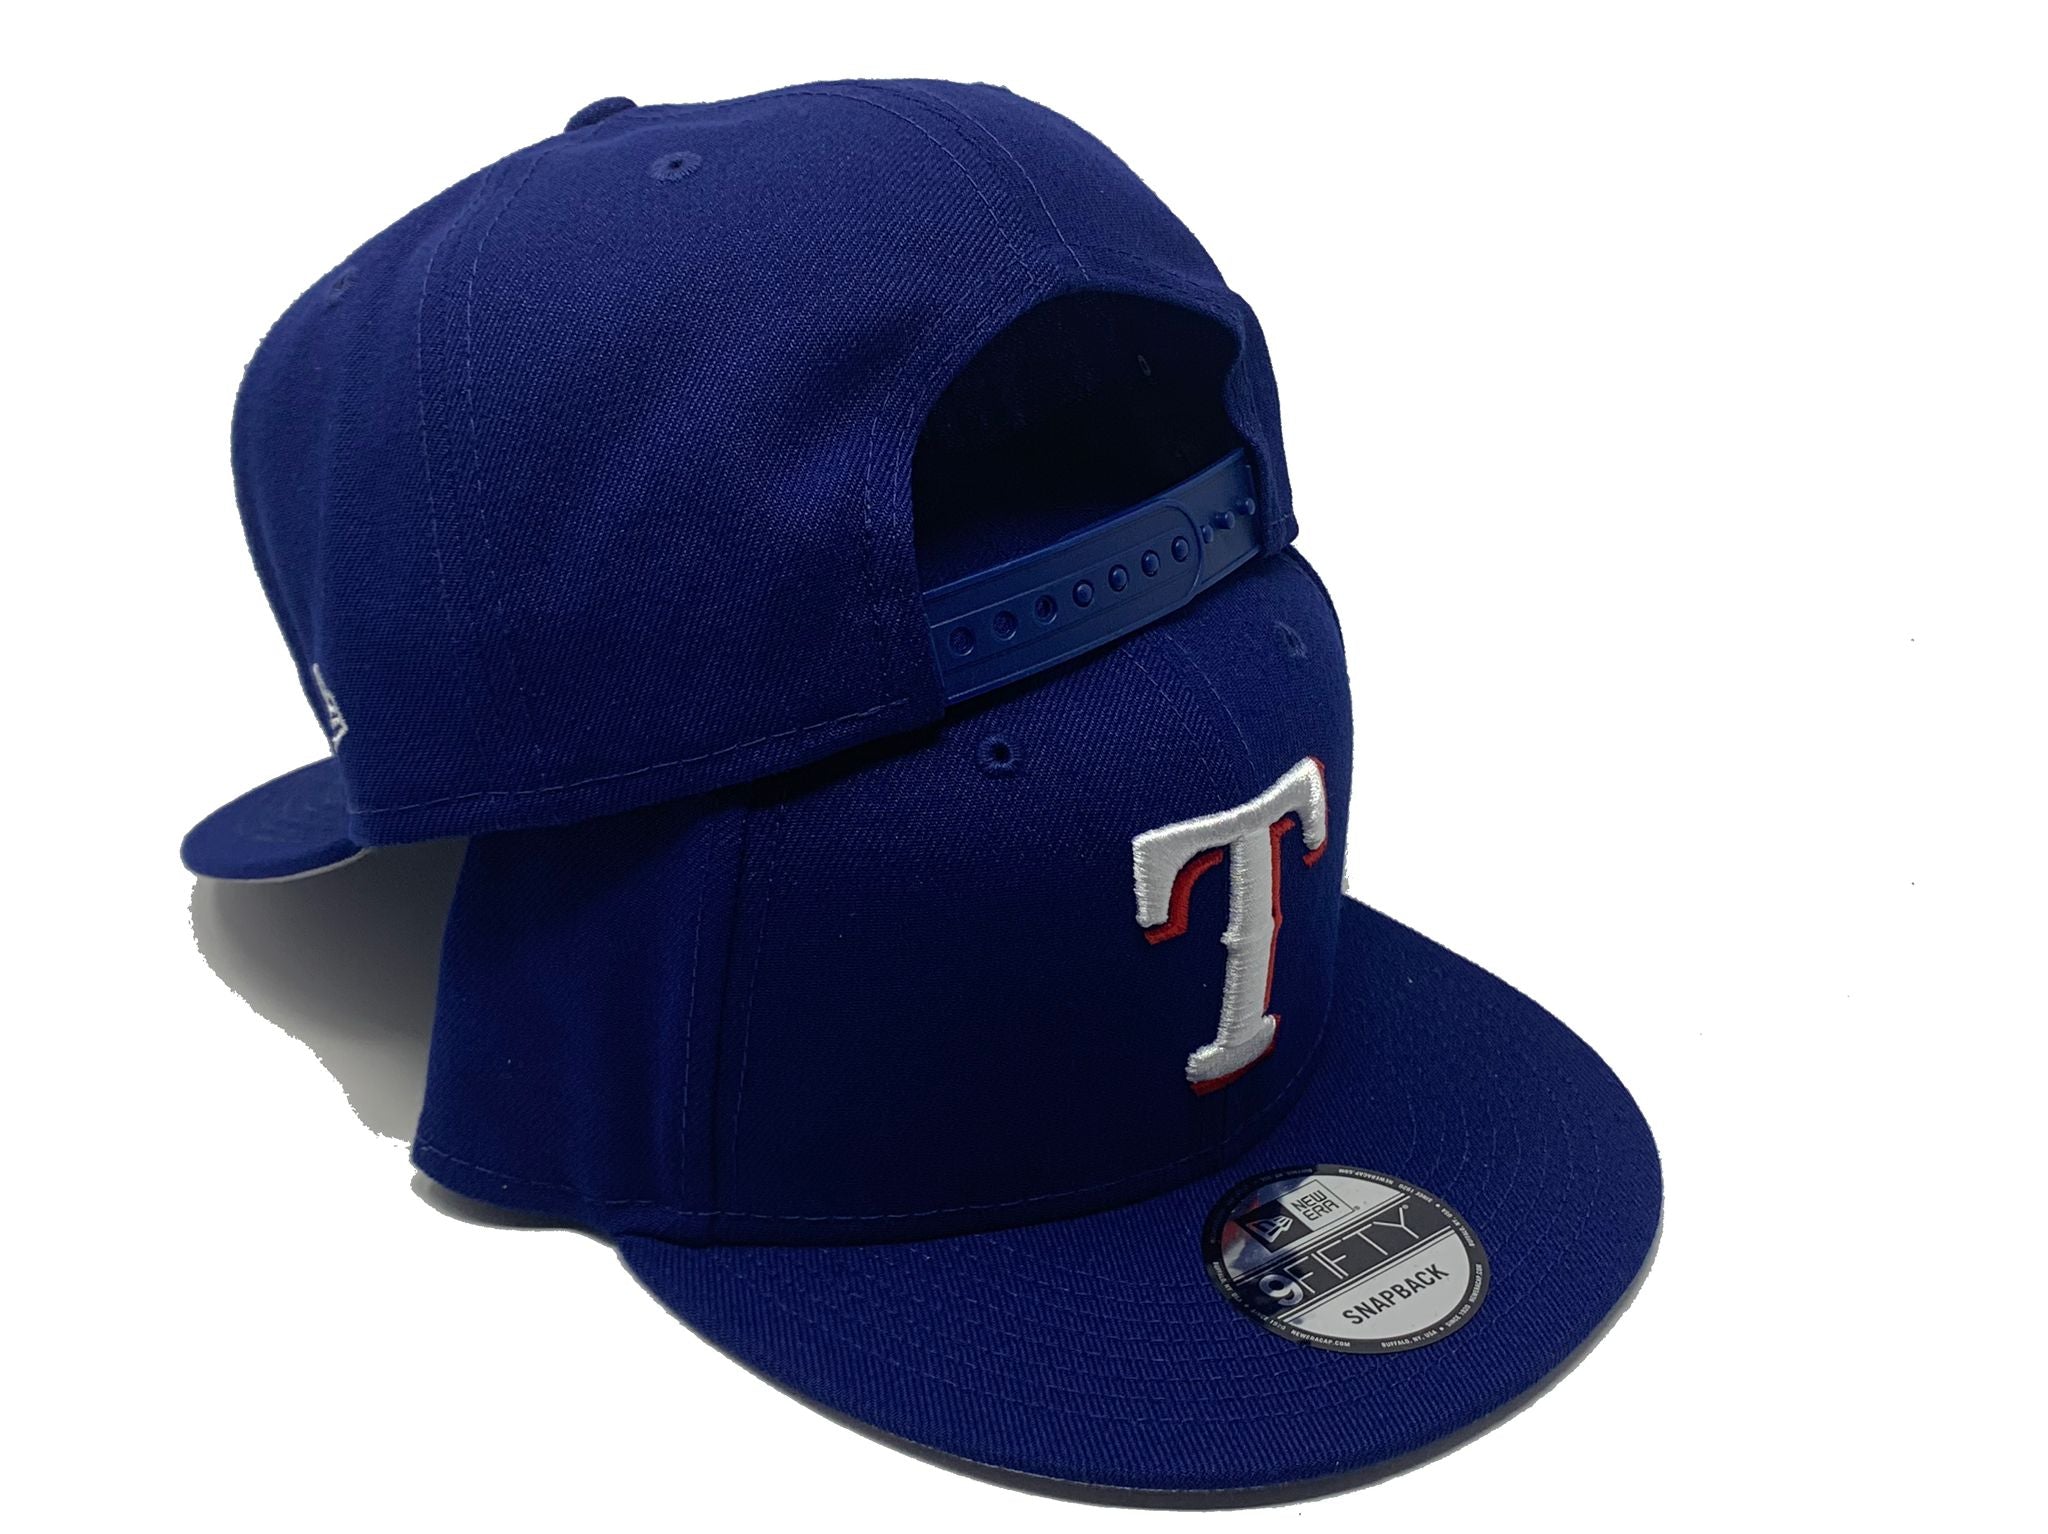 New Era 9FIFTY Texas Rangers Snapback Hat - Black, Black